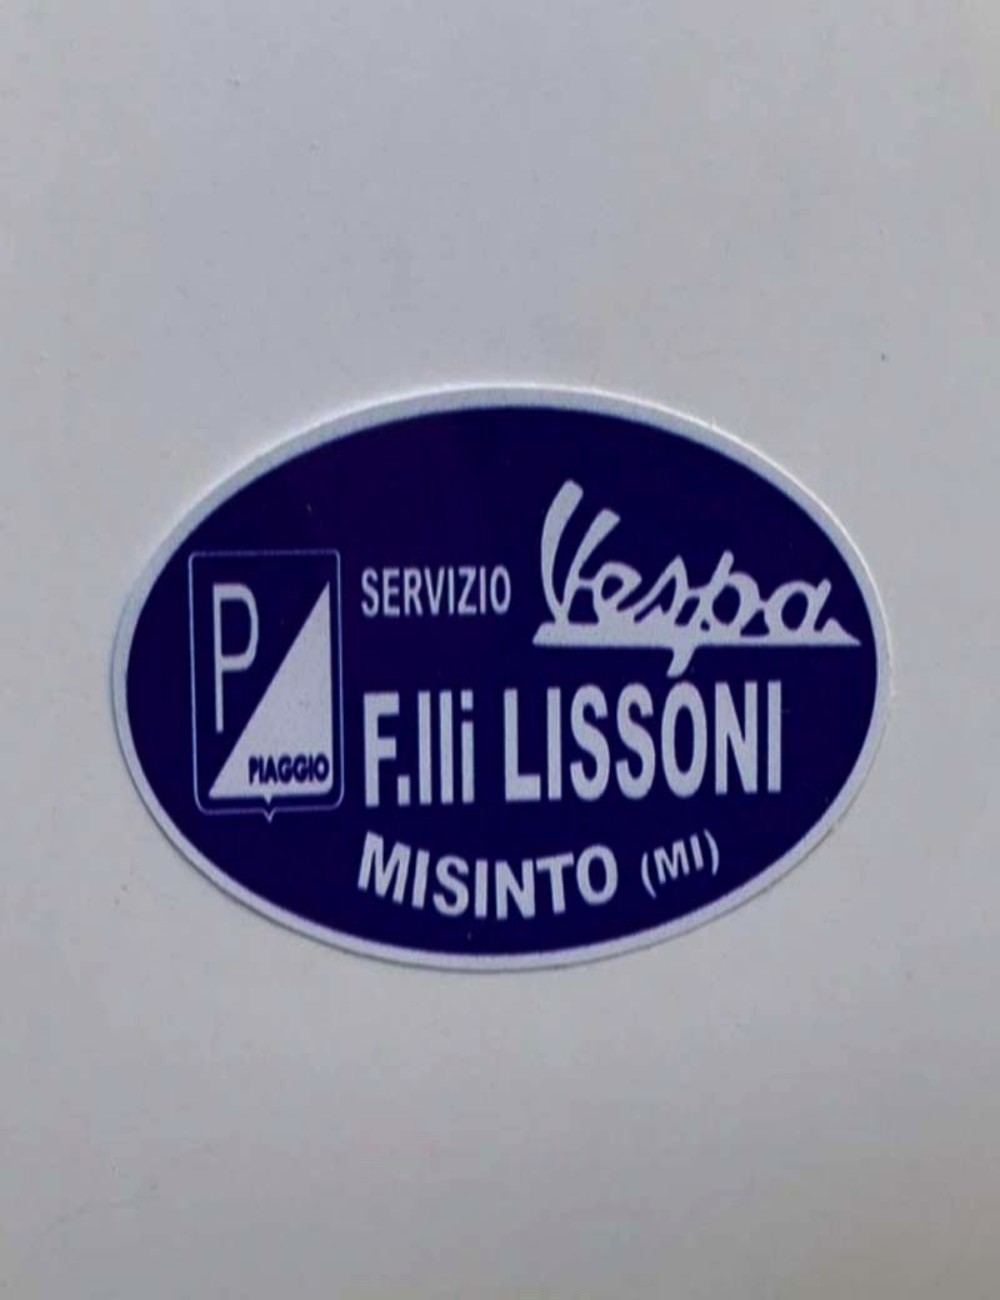 Adesivo concessionario F.lli Lissioni. Dimensioni: 6,4 cm x 3,9 cm